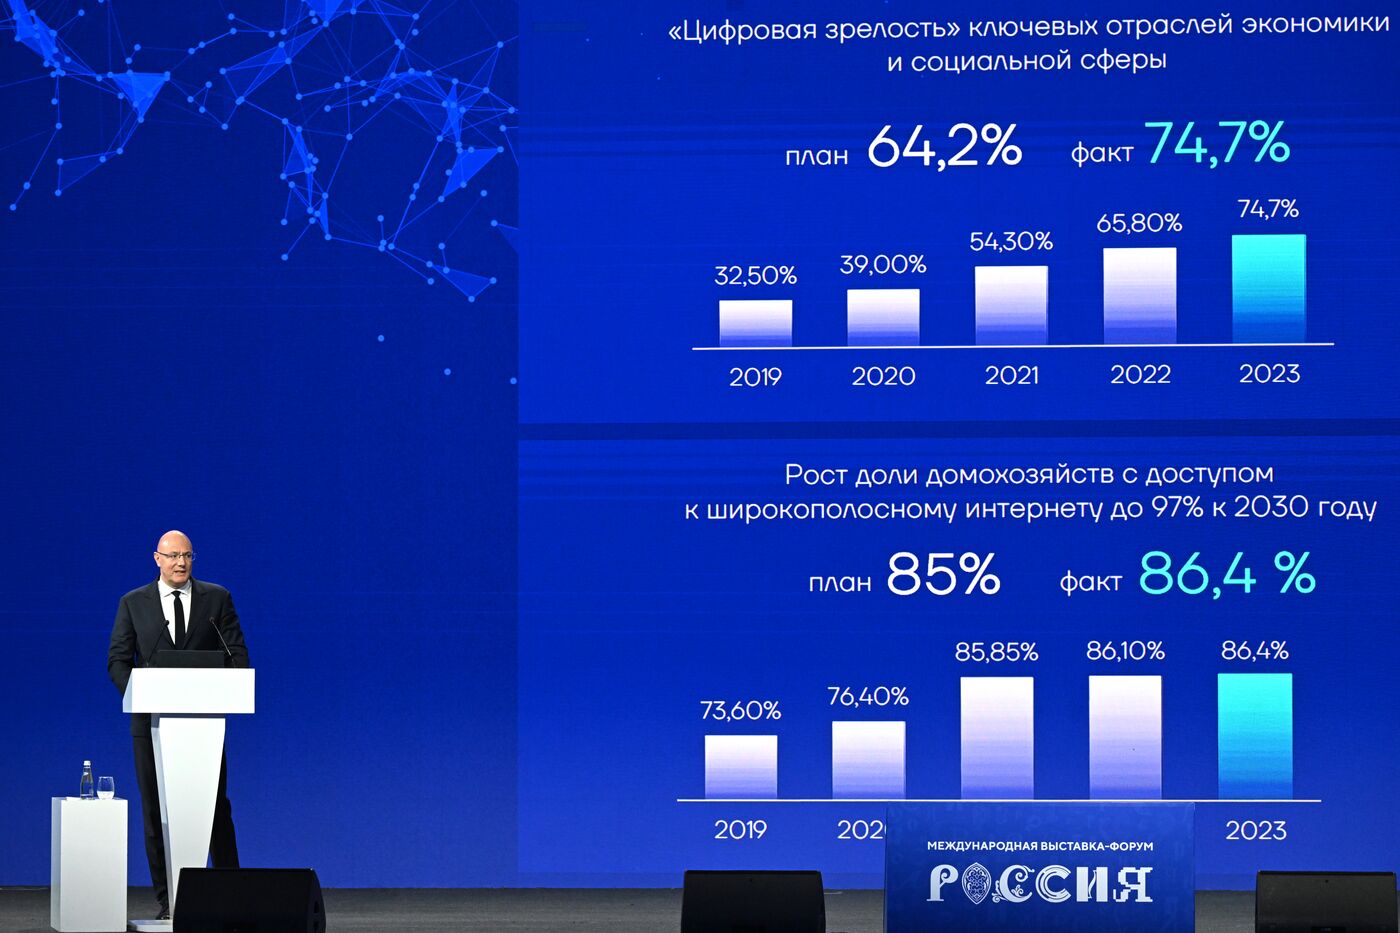 Выставка "Россия".  Пленарная сессия "ИТ, телеком, интернет: как национальные лидеры развиваются сами и развивают отрасль"